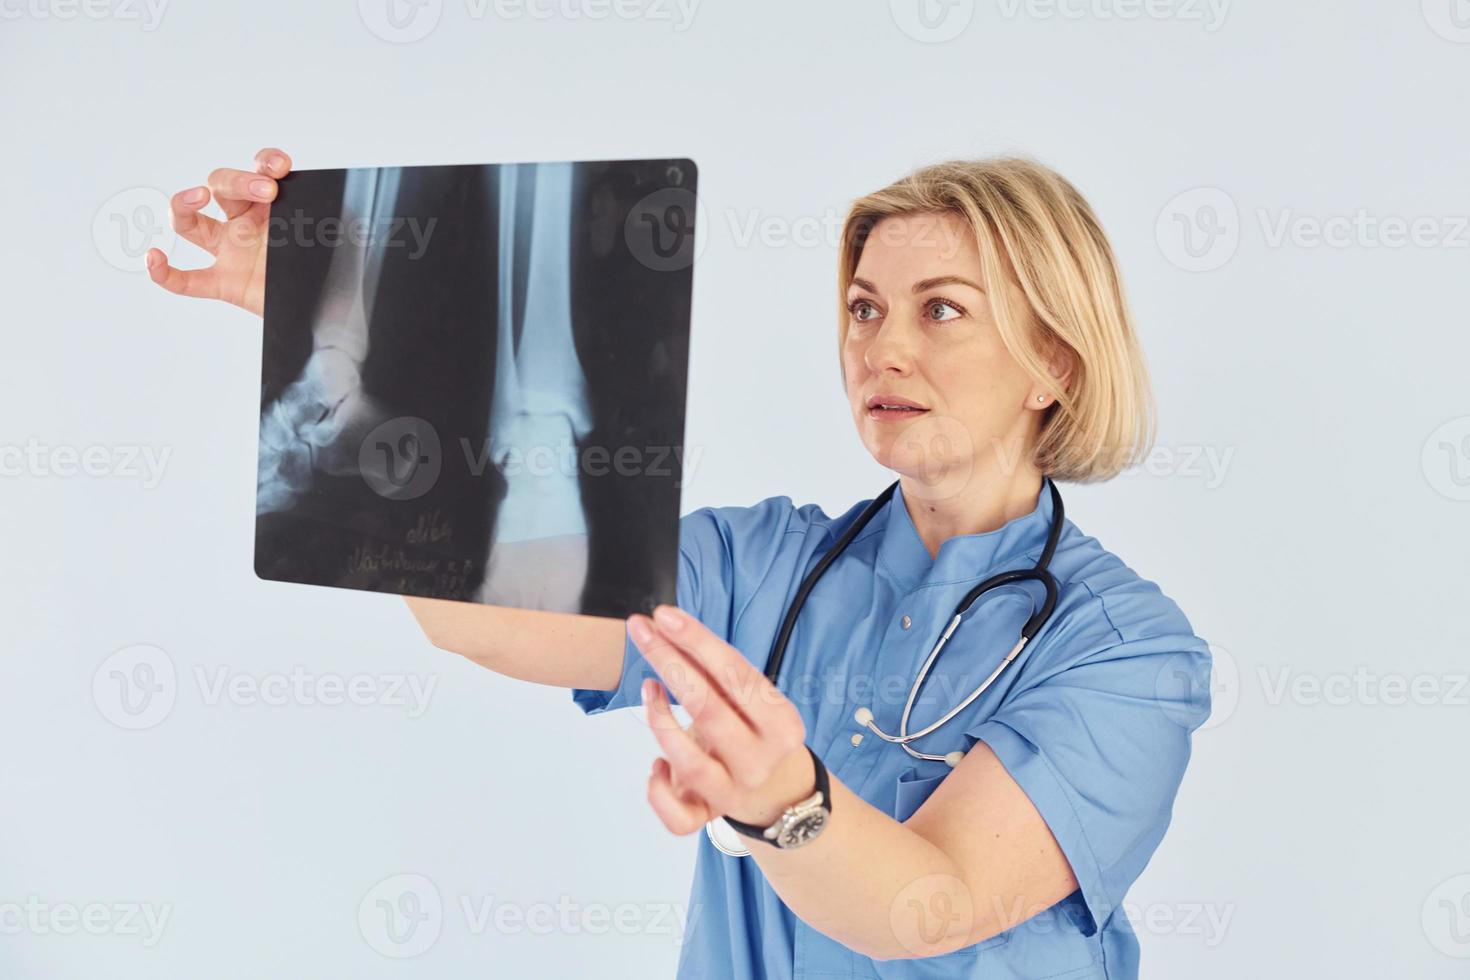 mantém o raio-x. médica profissional de meia-idade de uniforme e com estetoscópio foto